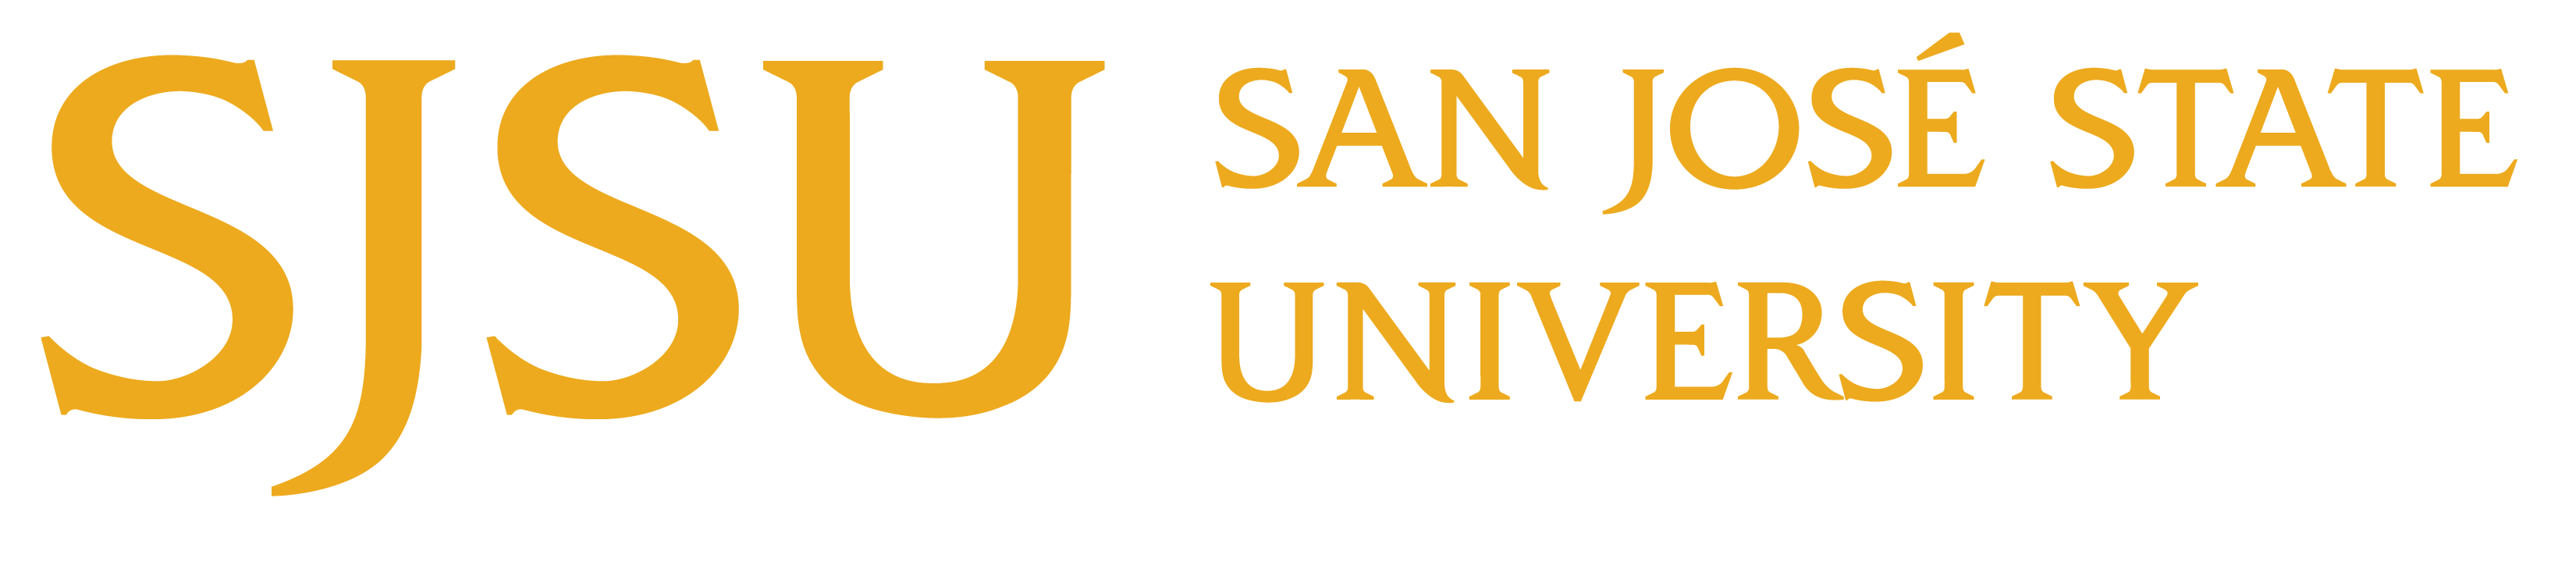 SJSU- San Jose State University logo